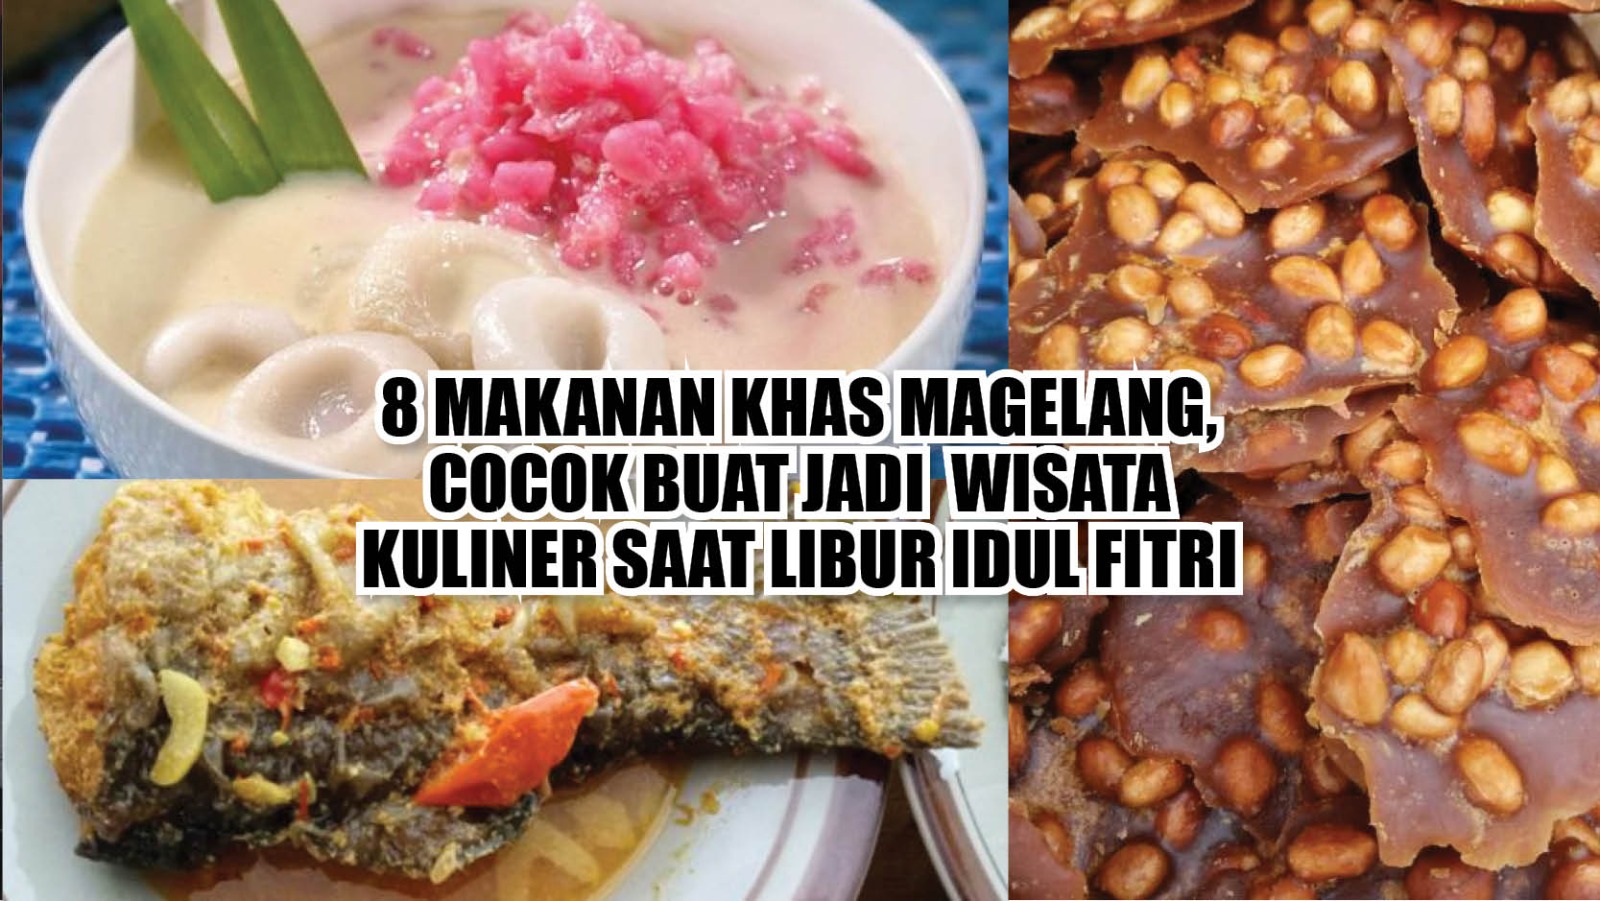 8 Makanan Khas Magelang, Cocok Buat Jadi Wisata Kuliner Saat Libur Idul Fitri